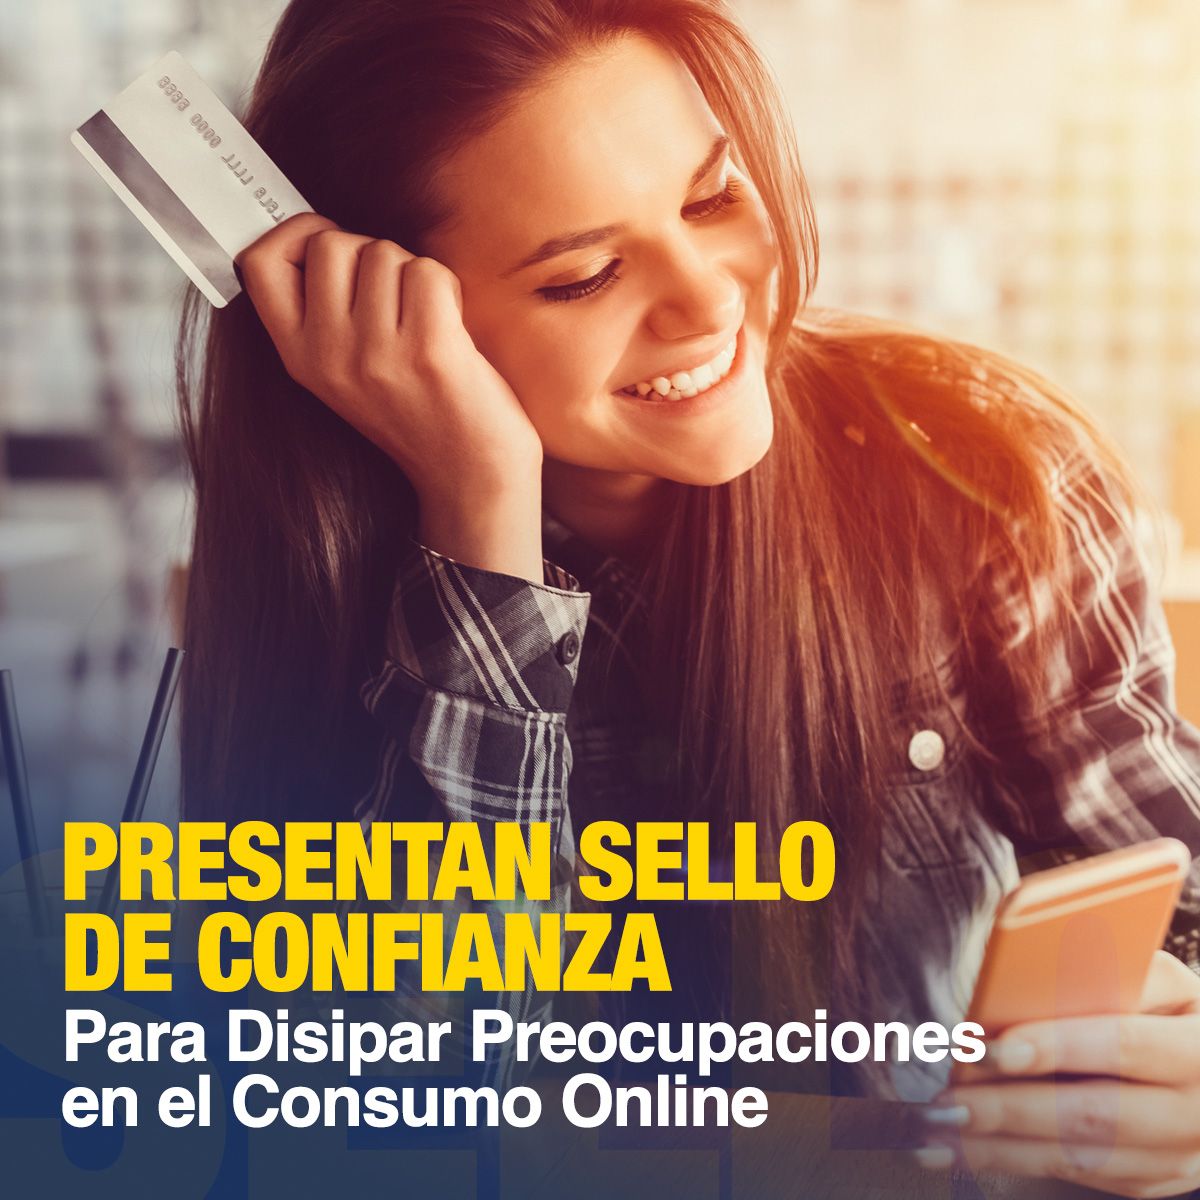 Presentan Sello de Confianza Para Disipar Preocupaciones en el Consumo Online